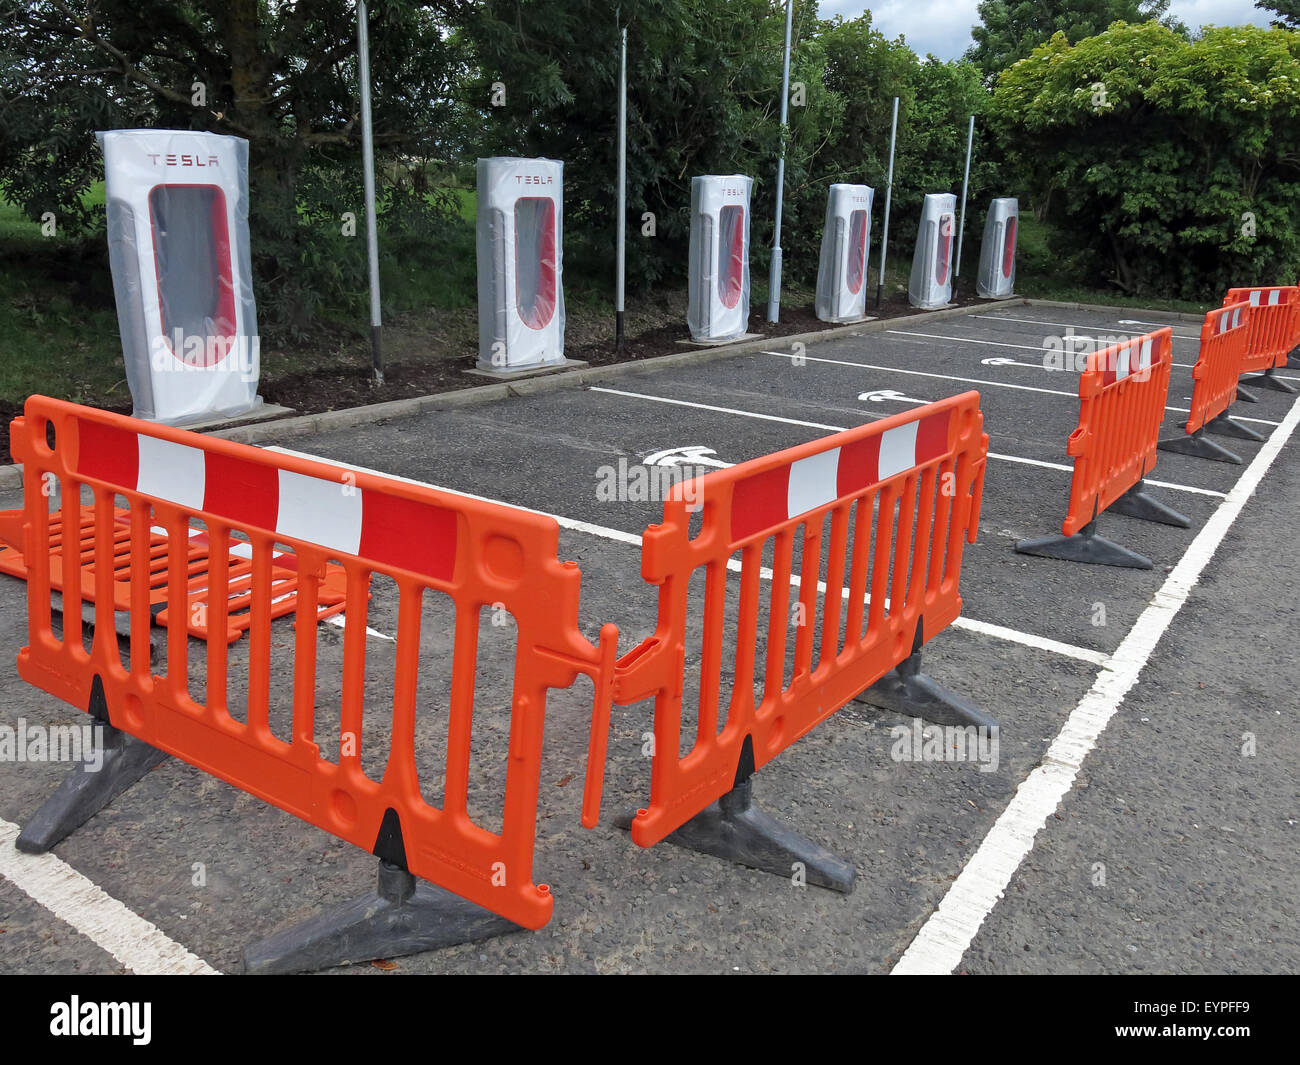 Tesla Ladestationen auf einer Autobahnraststätte in Großbritannien, mit Barrieren um umgesetzt werden Stockfoto